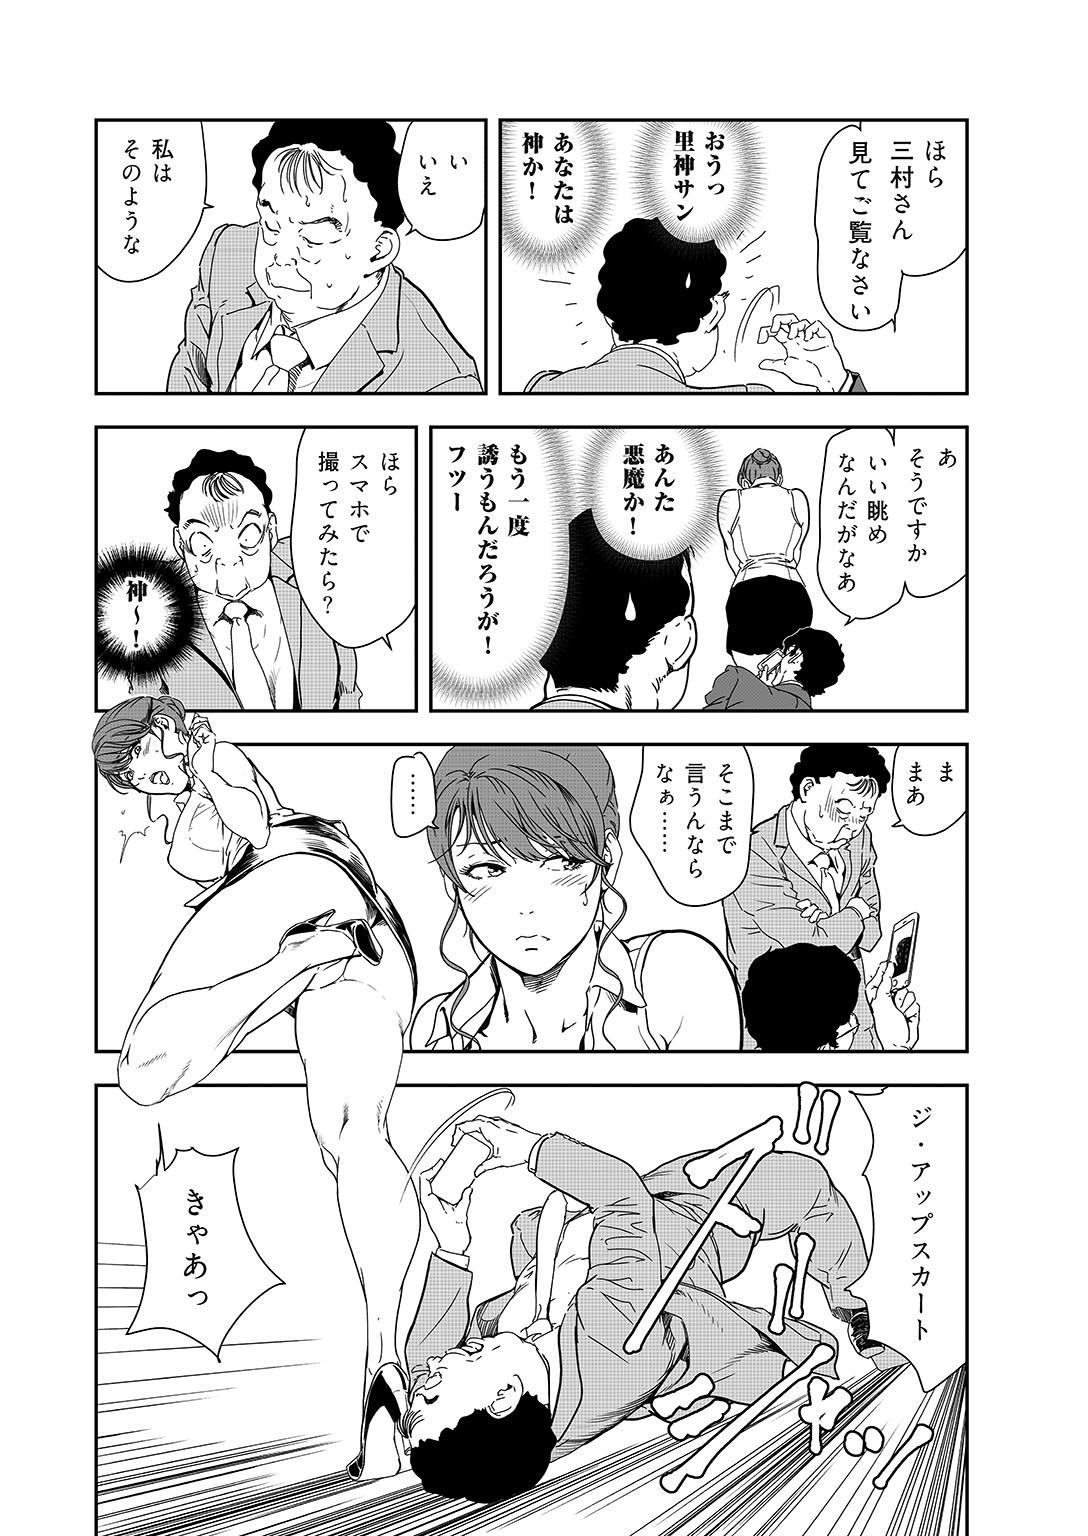 Bitch Nikuhisyo Yukiko 38 Chudai - Page 11